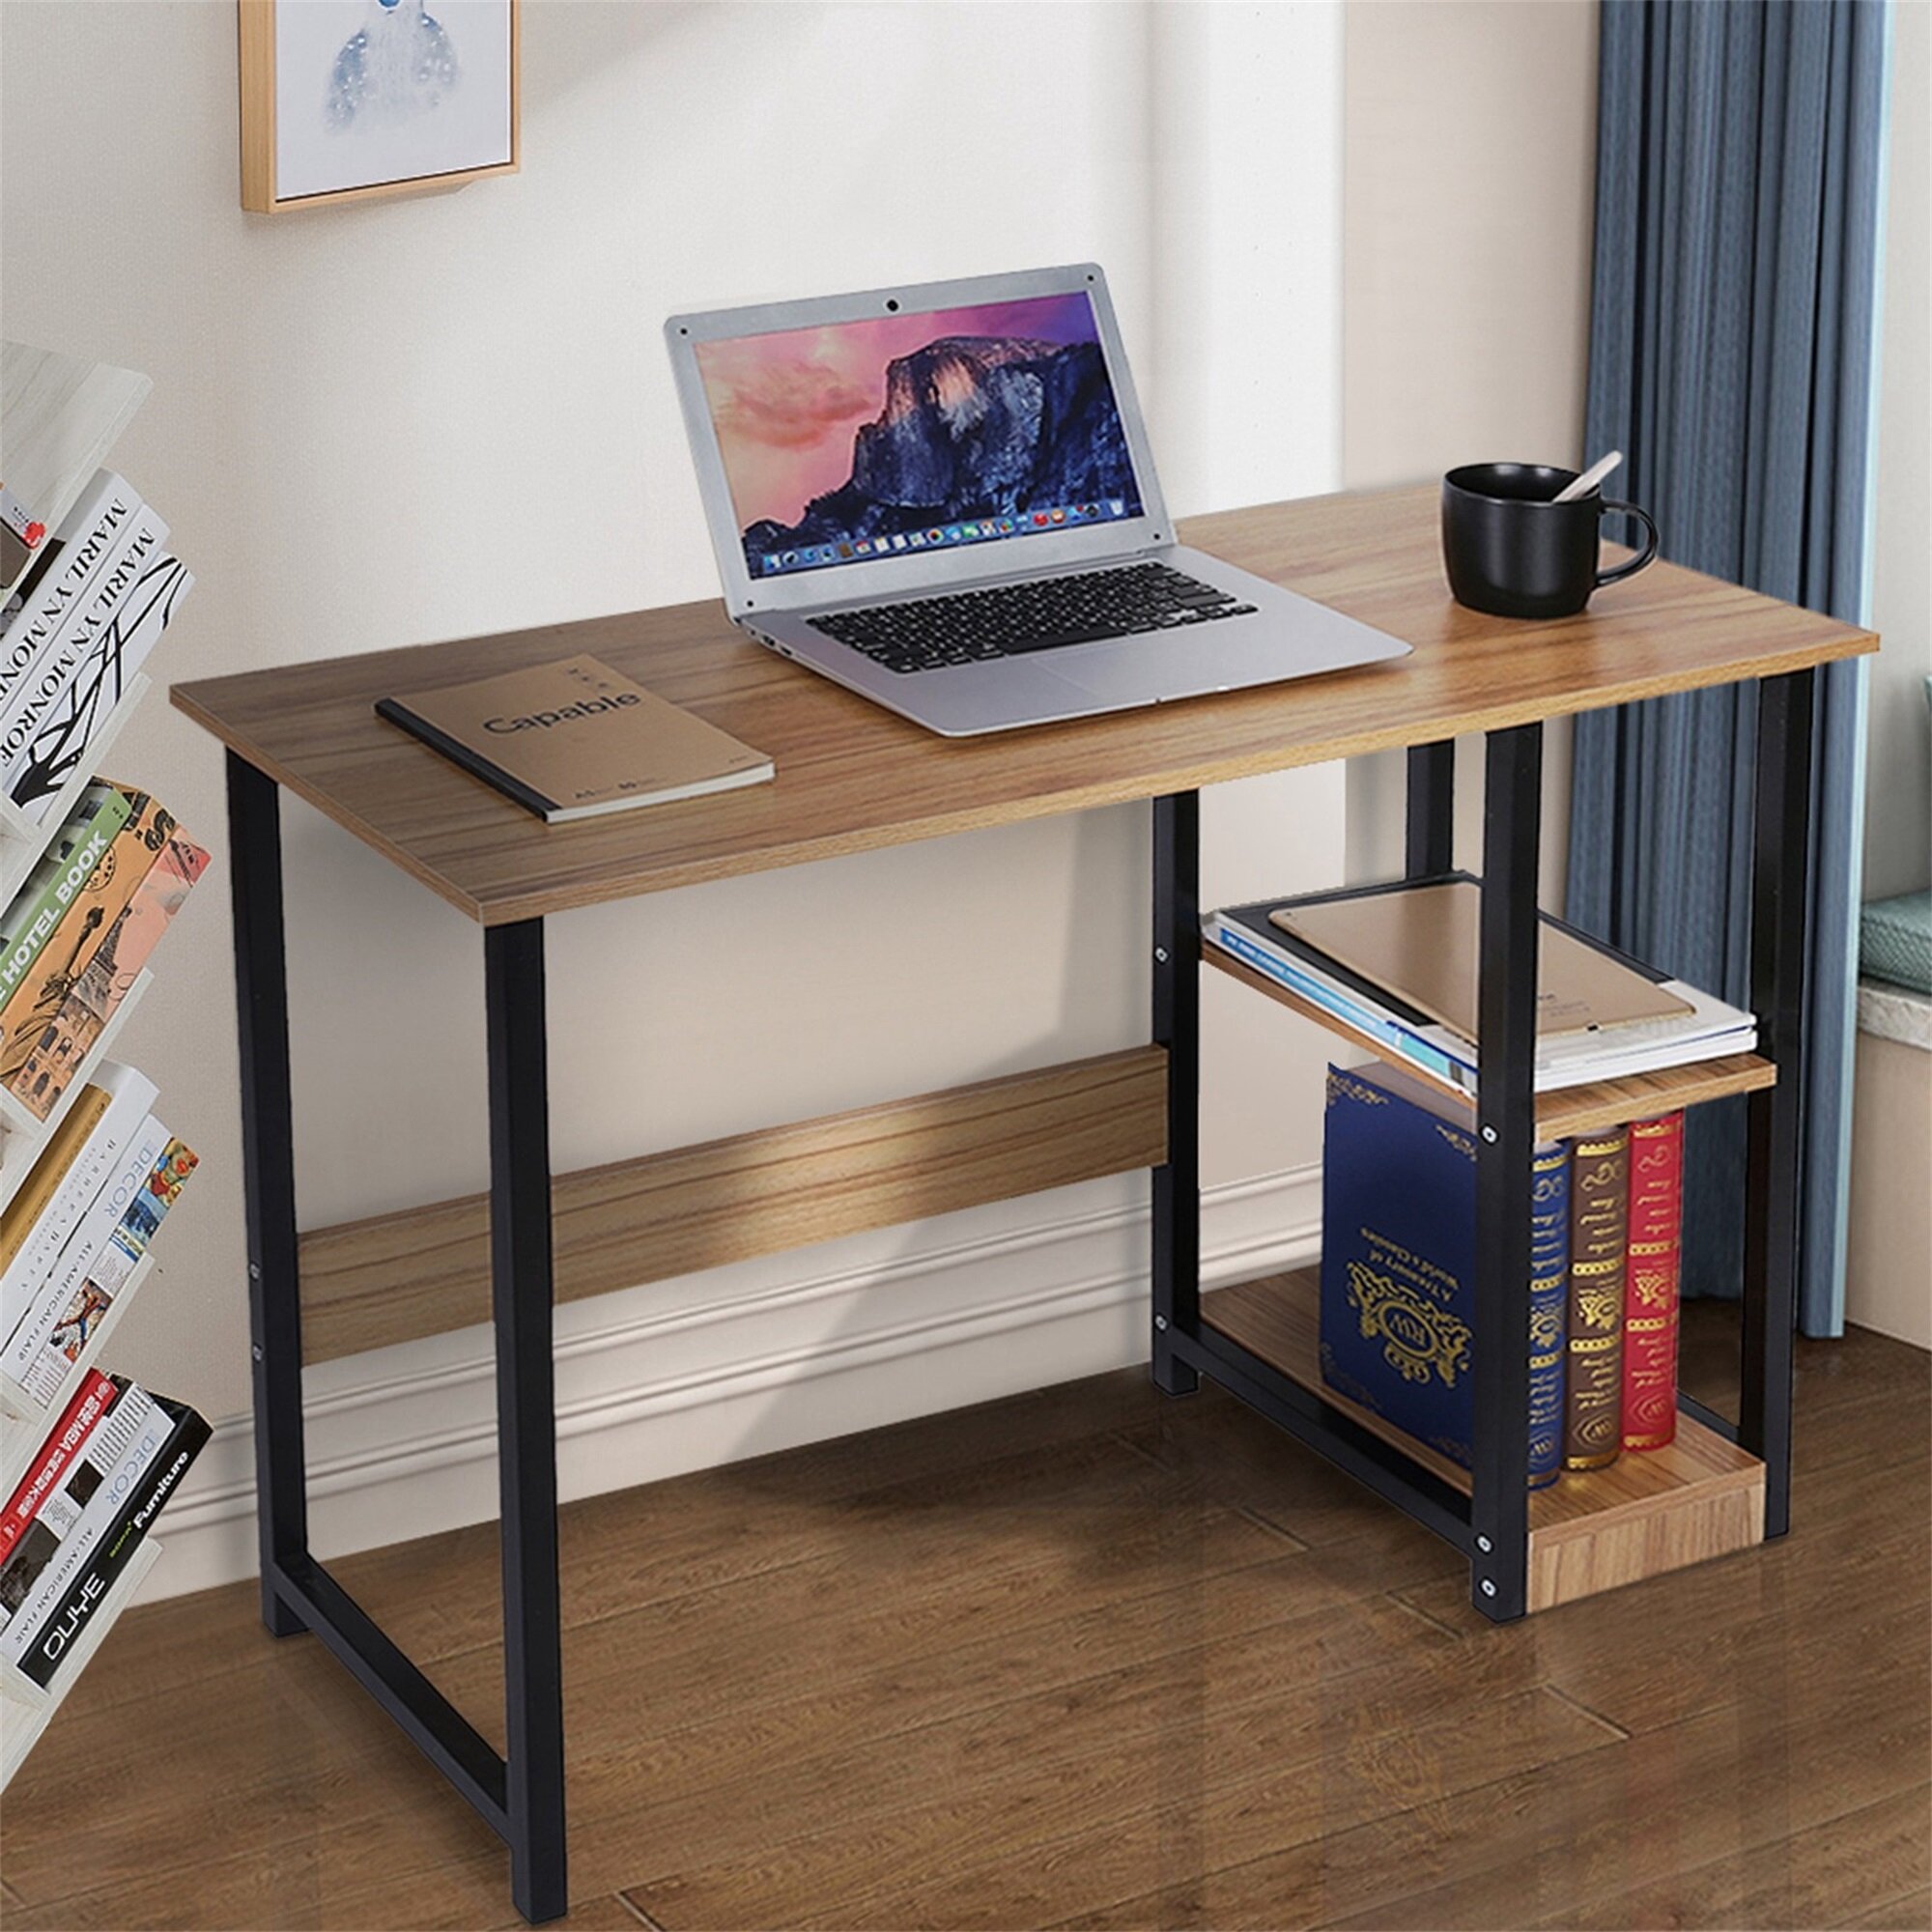 Details about   Bedroom Laptop Study Table Office Desk Workstation Home Desktop Computer Desk 